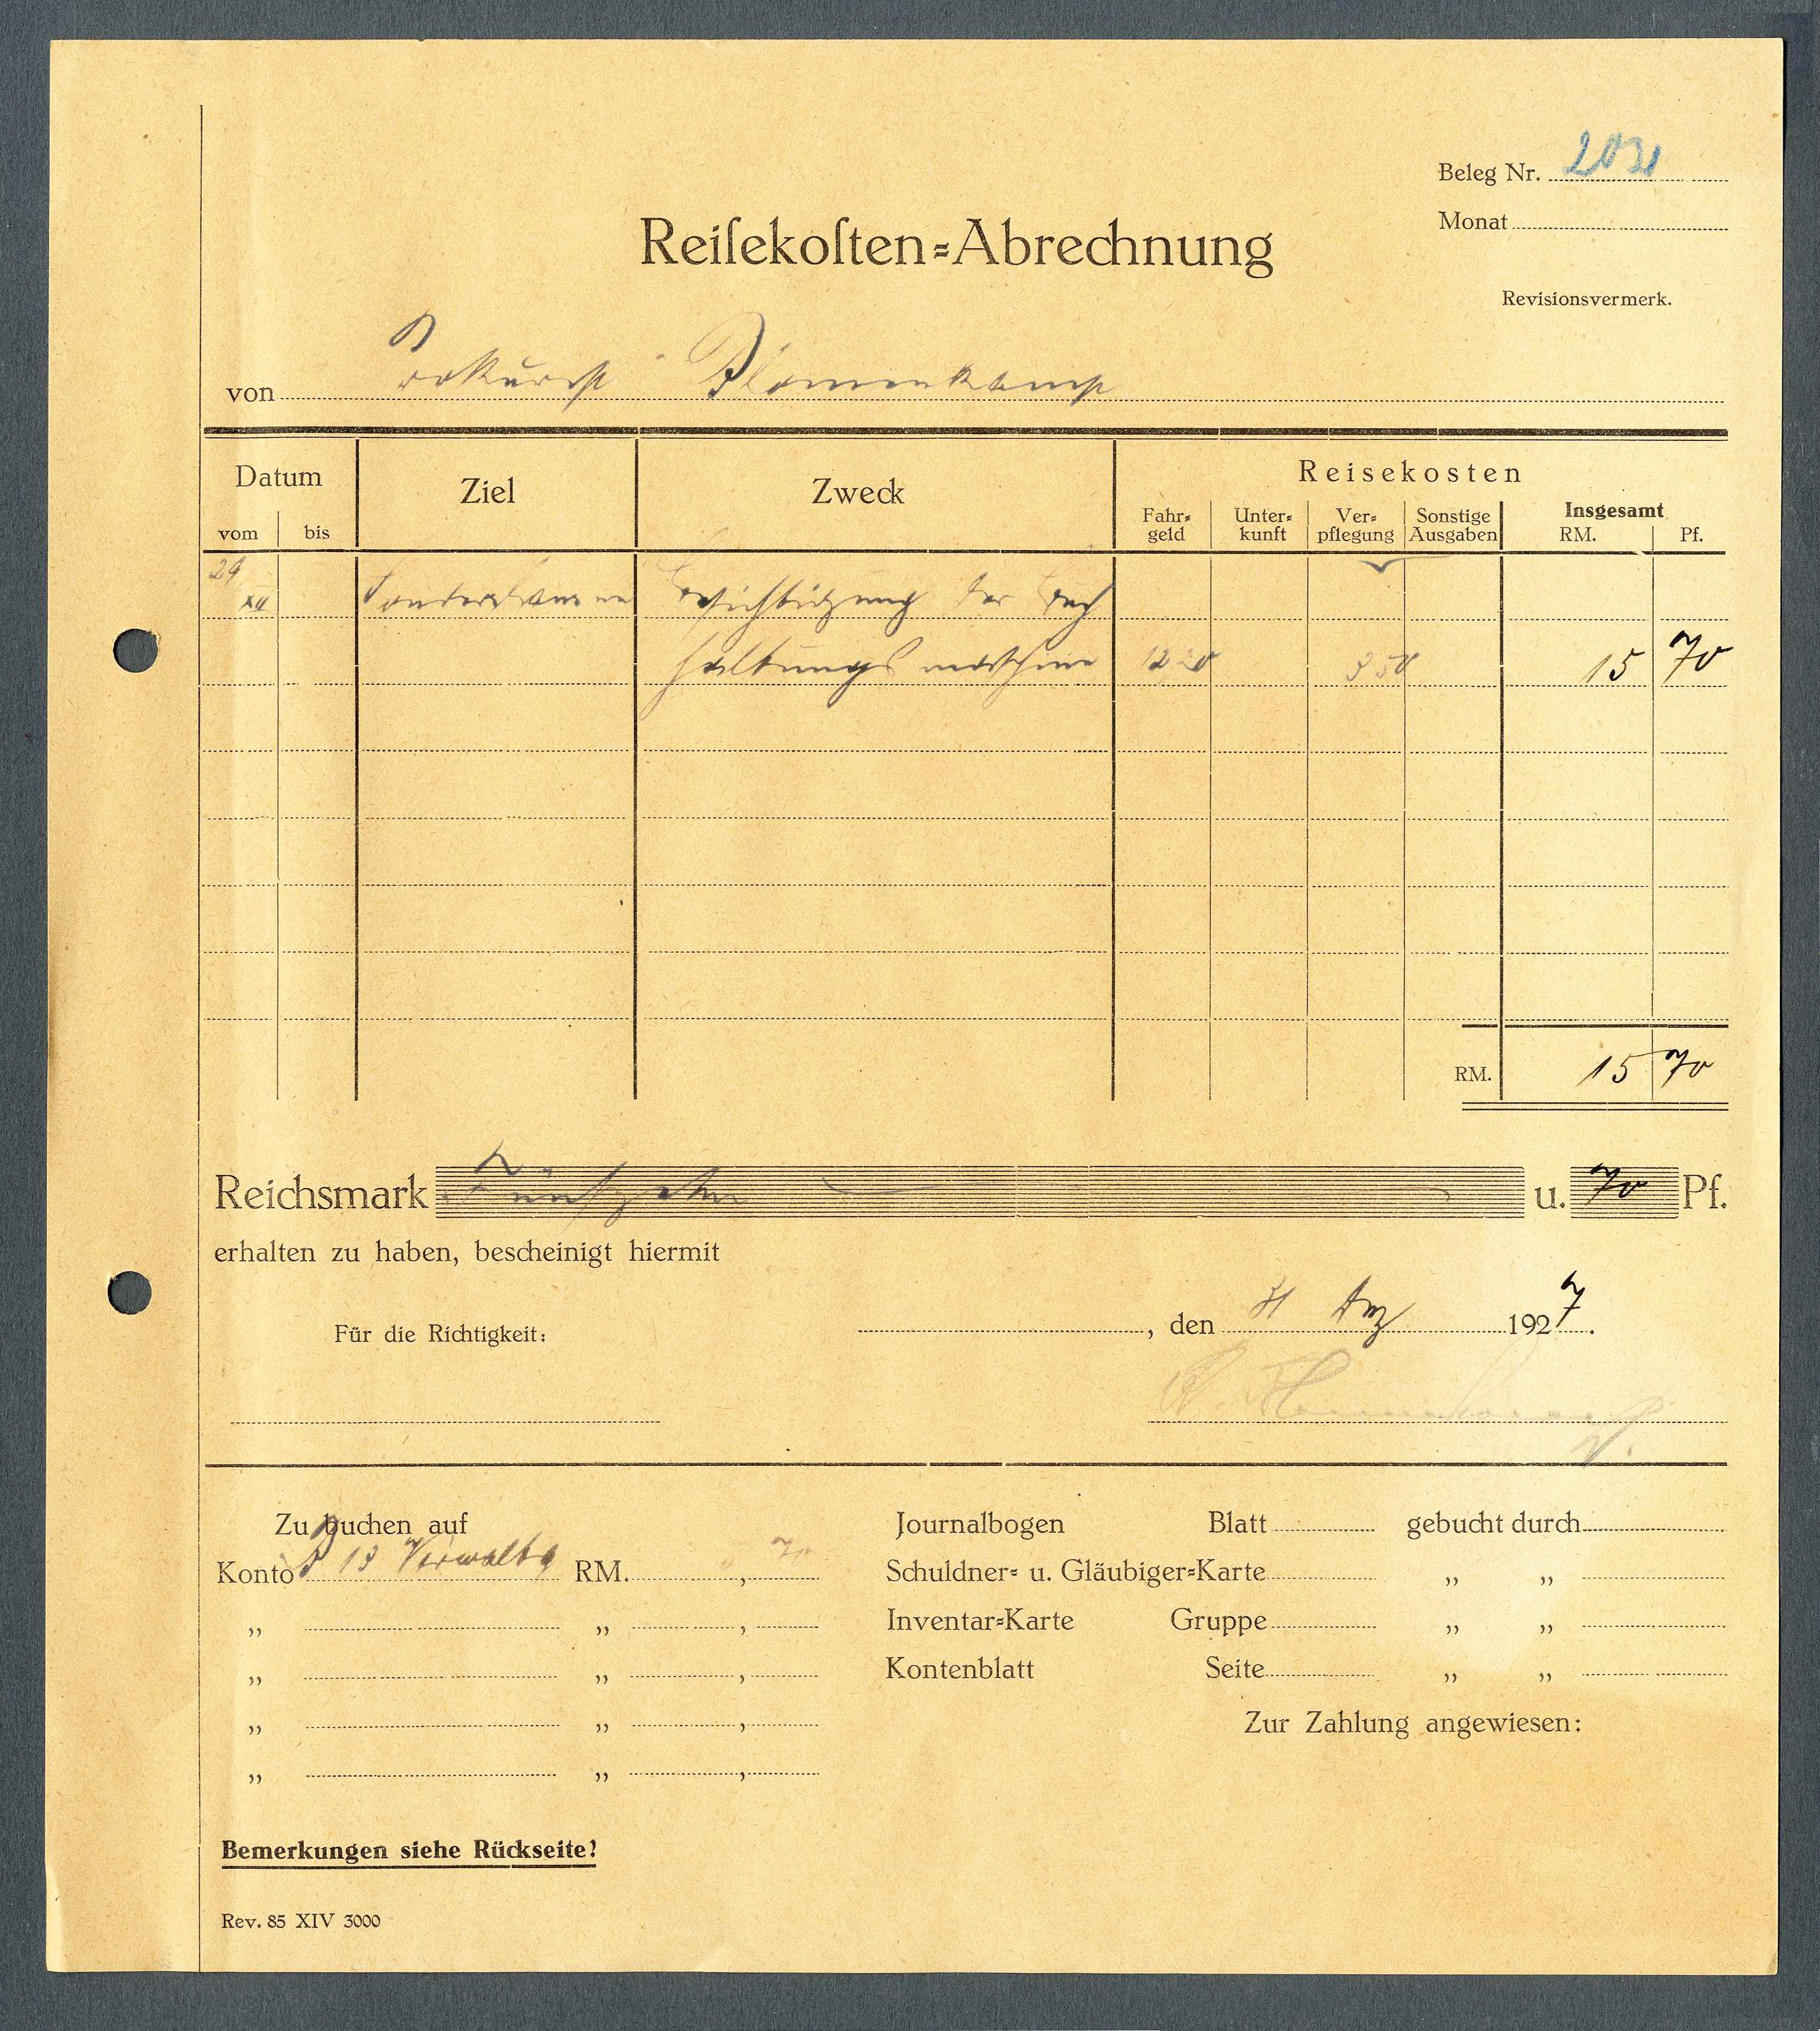 Tabelle 'Kranken- und Hausgeld' der Ruhrknappschaft (Werra-Kalibergbau-Museum, Heringen/W. CC BY-NC-SA)